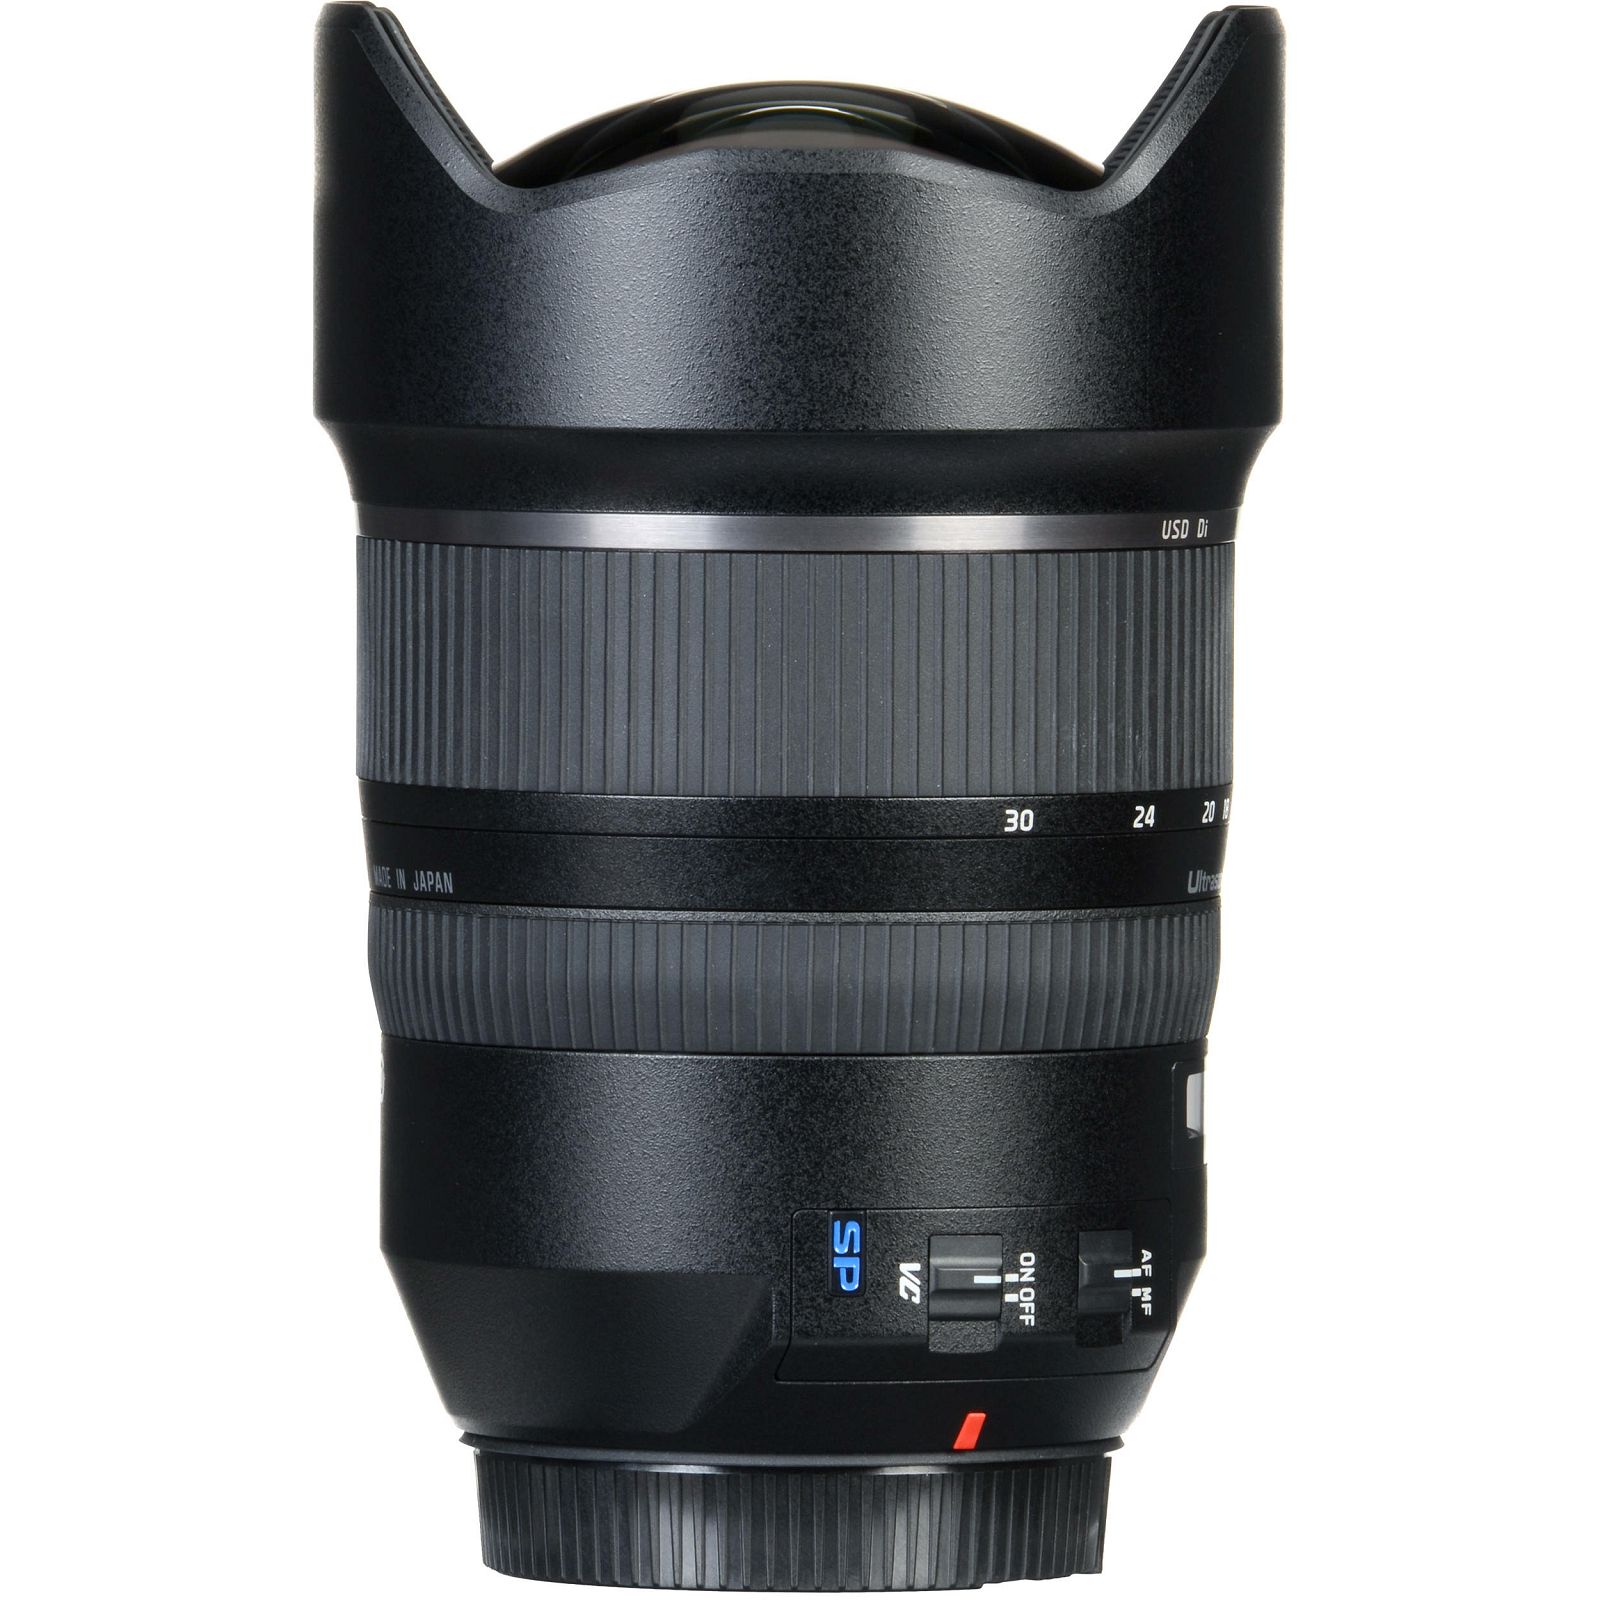 Tamron SP 15-30mm f/2.8 Di VC USD širokokutni objektiv za Canon EF (A012E)